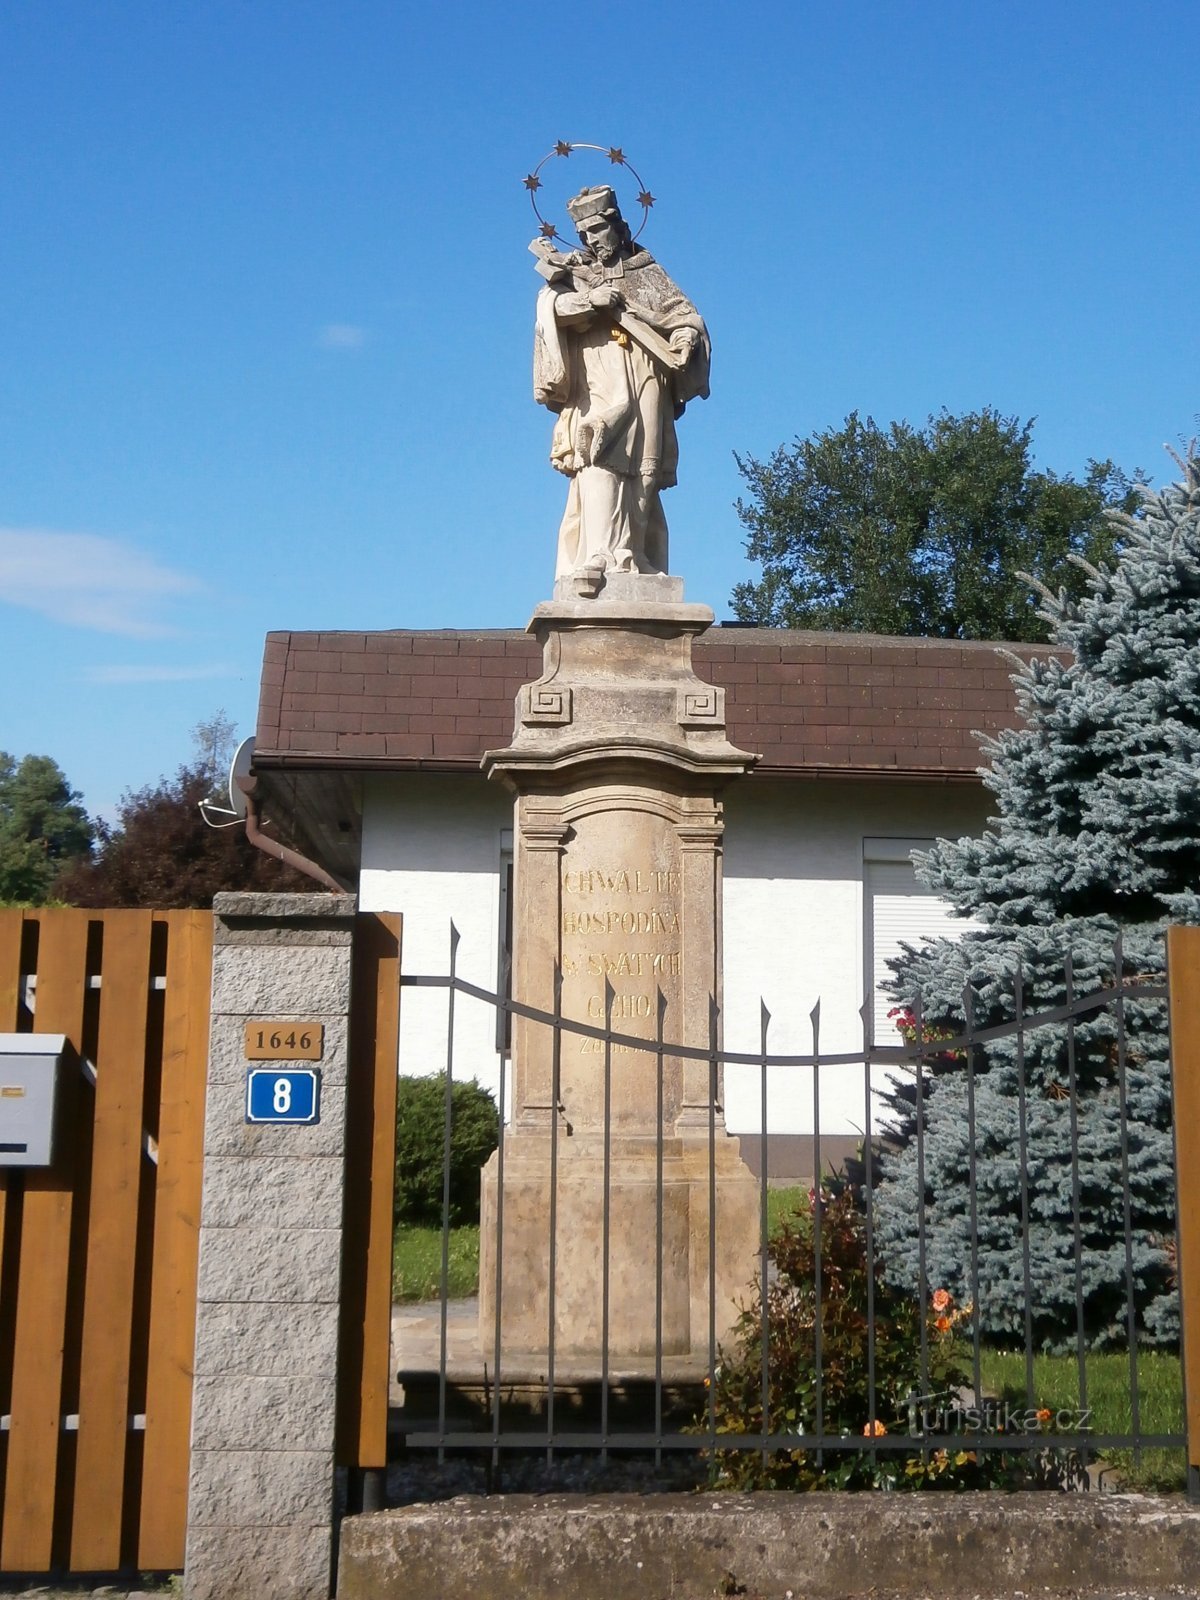 Statua di S. Jan Nepomucký in via Medková (Hradec Králové, 29.7.2017)